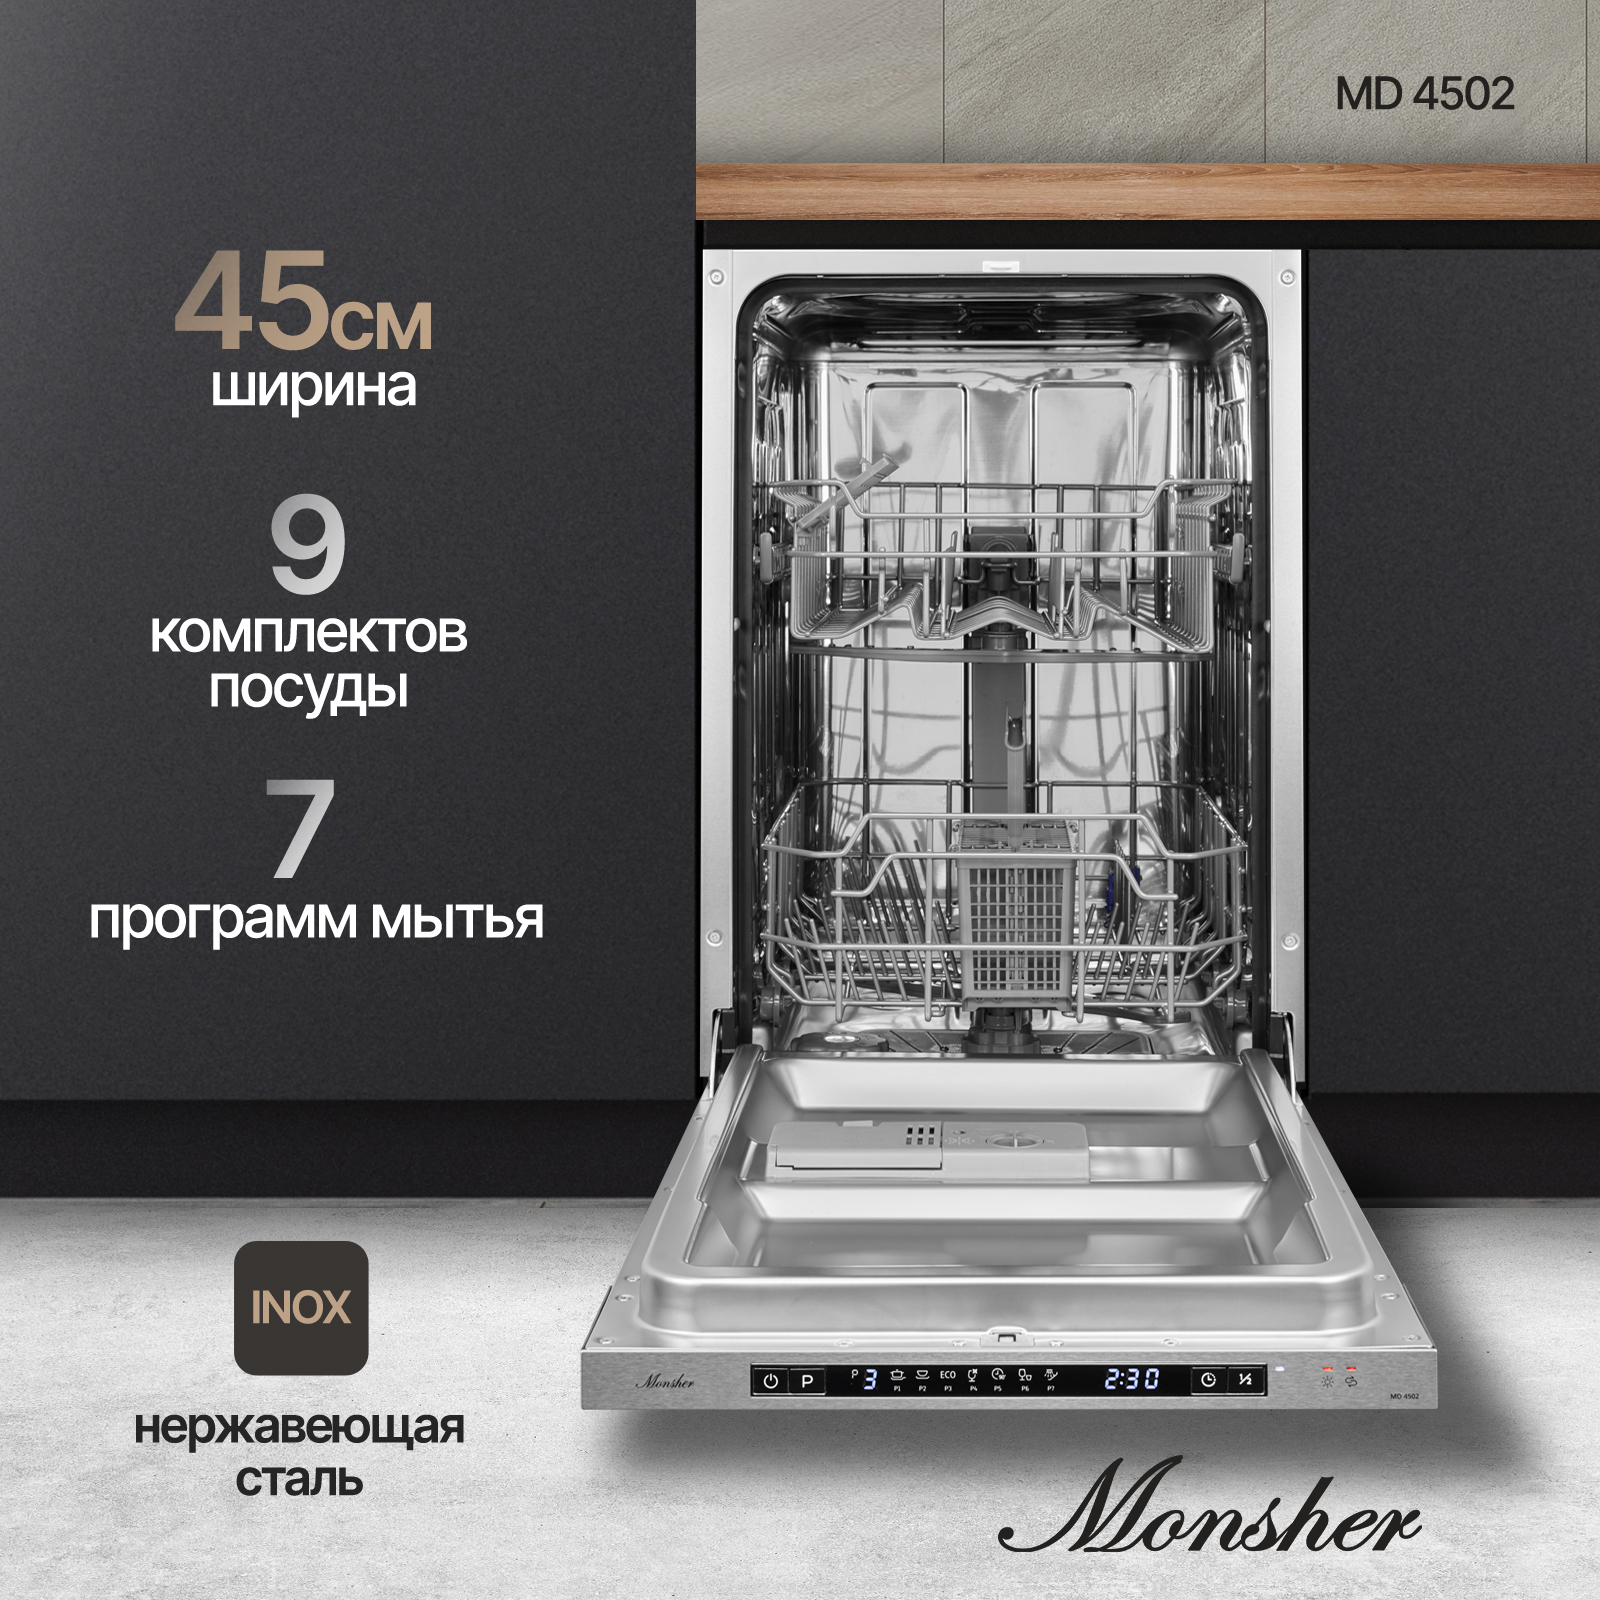 встраиваемая посудомоечная машина monsher md 4503 Встраиваемая посудомоечная машина Monsher MD 4502